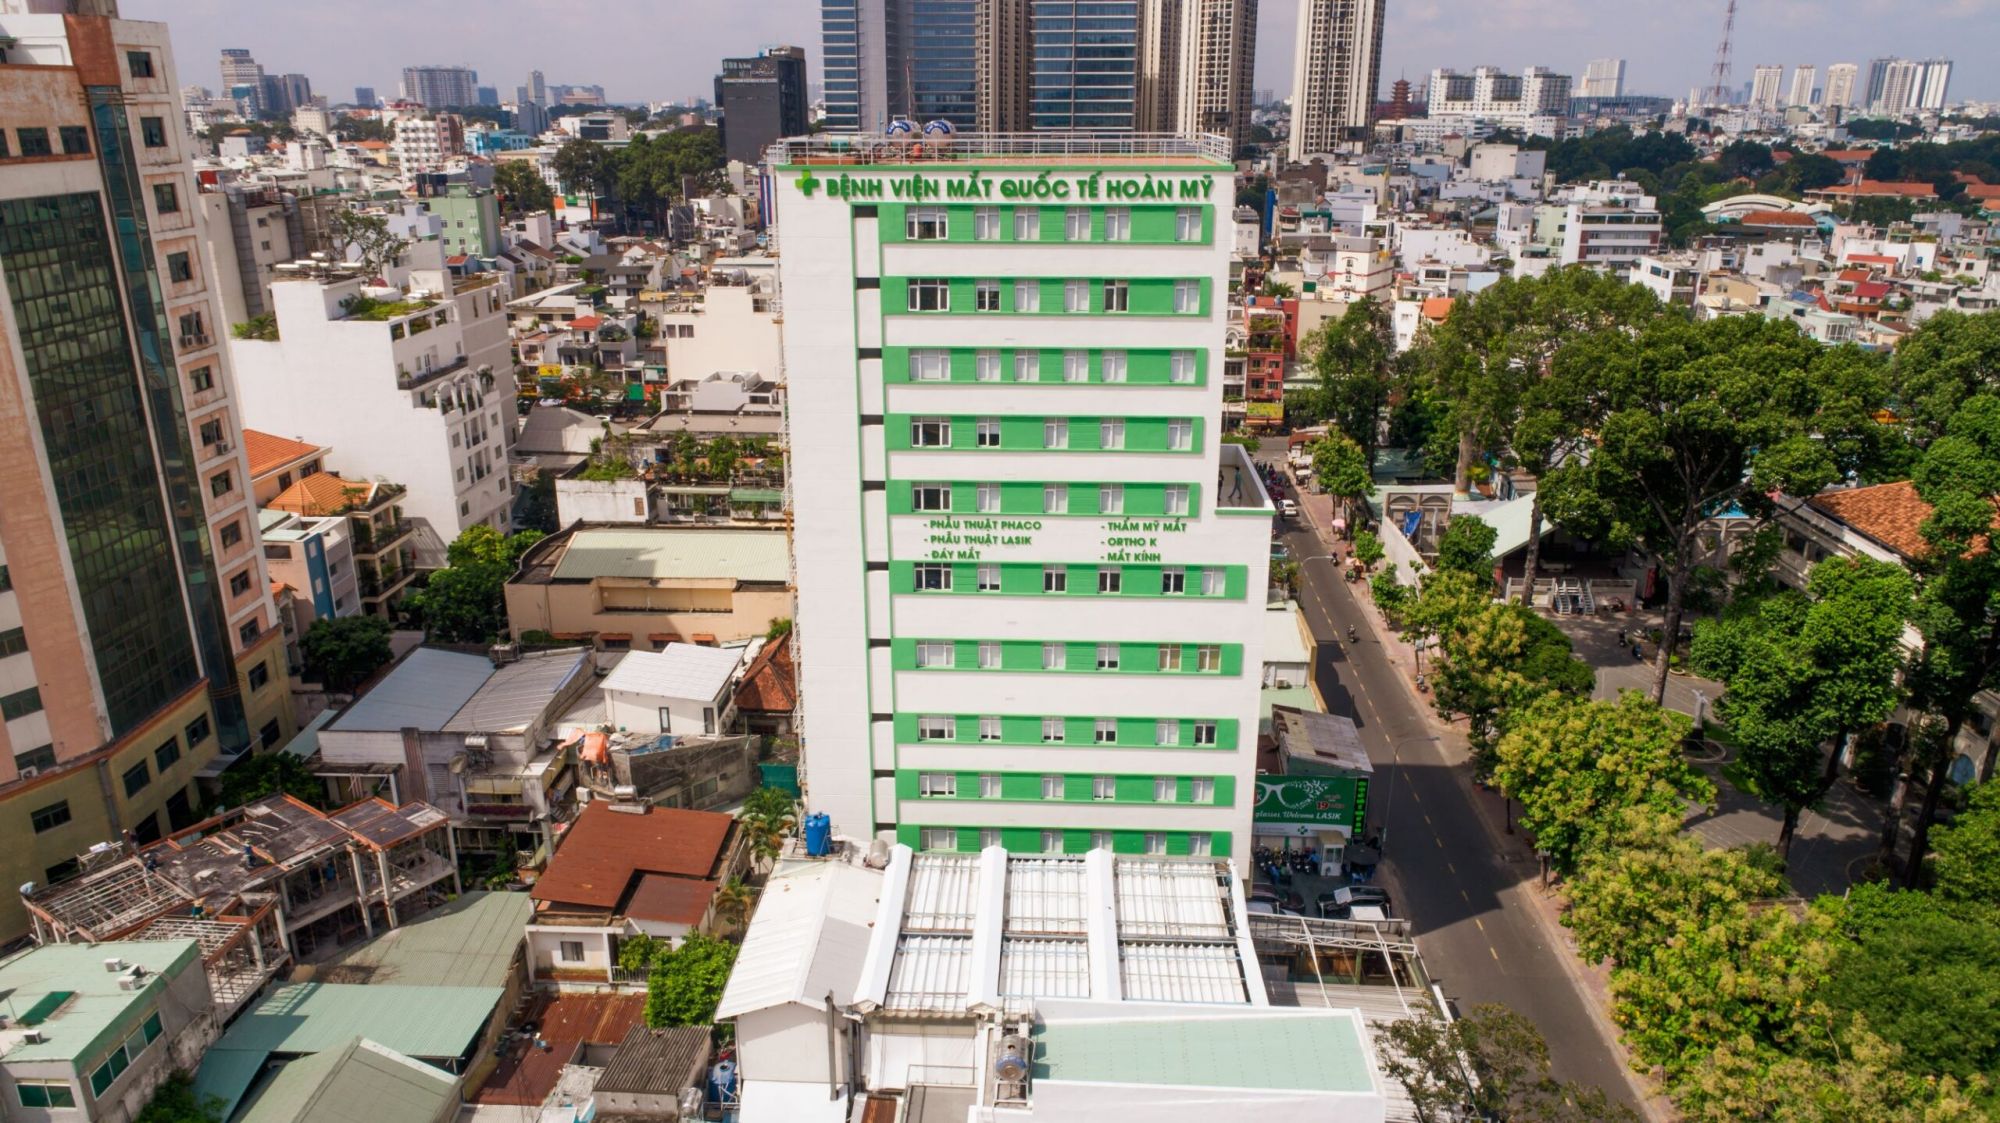 Bệnh viện Mắt Quốc tế Hoàn Mỹ Sài Gòn